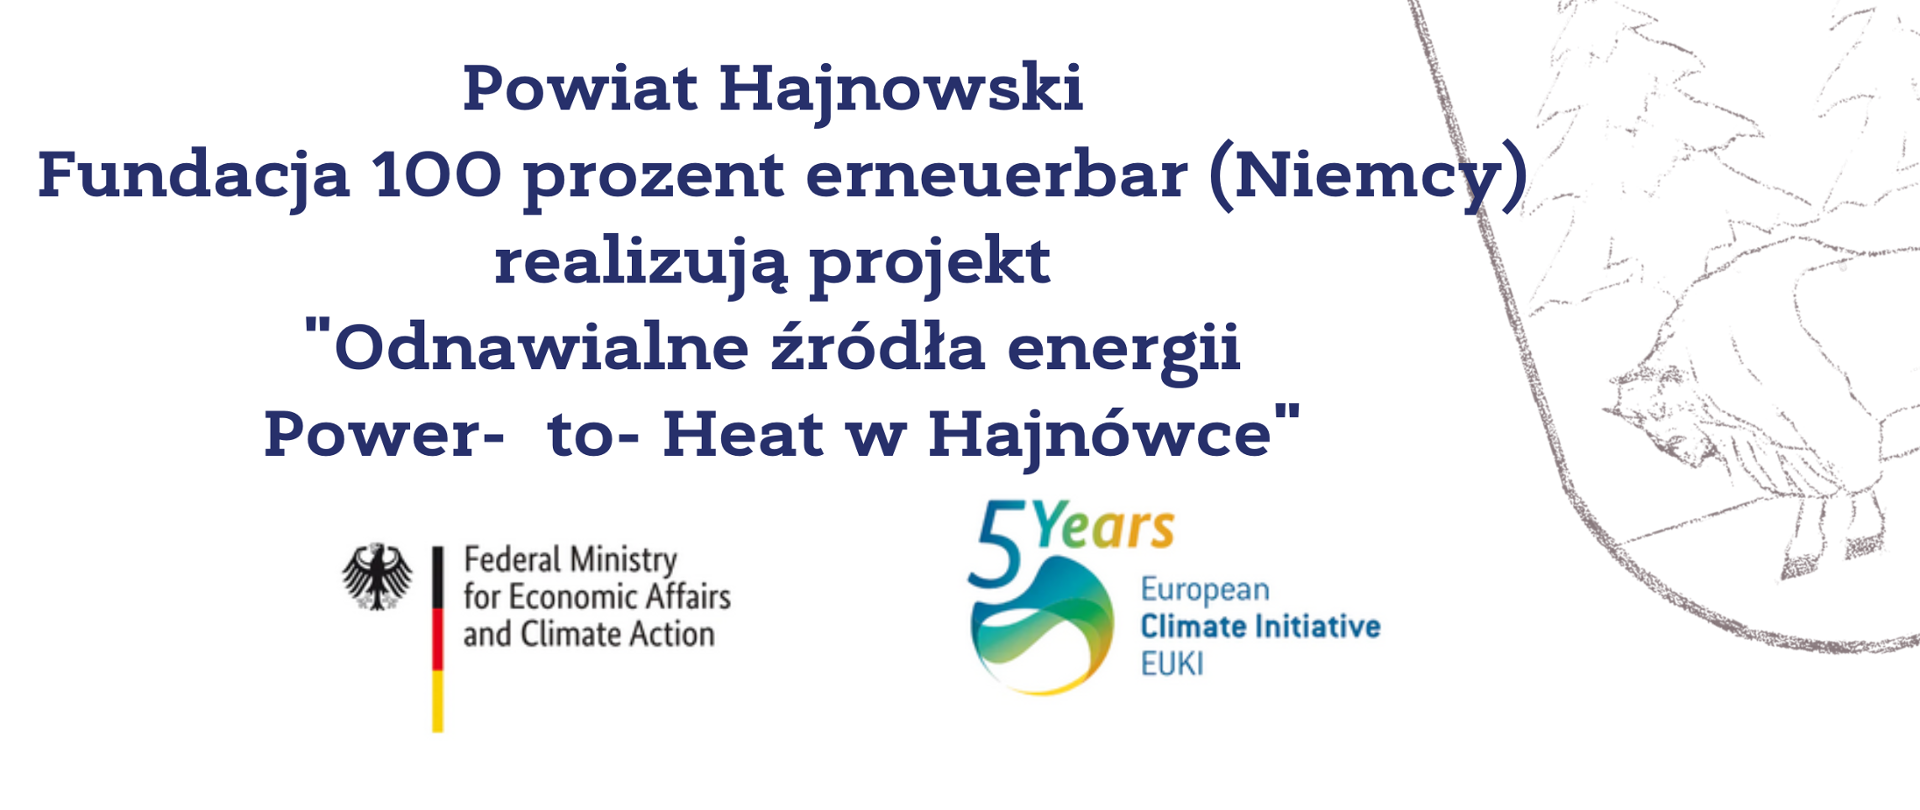 Powiat Hajnowski Fundacja 100 prozent erneuerbar (Niemcy) realizują projekt "Odnawialne źródła energii Power- to- Heat w Hajnówce". Napis na białym tle, u dołu logotypy projektu, w tle herb powiatu (żubr i dwa świerki) 